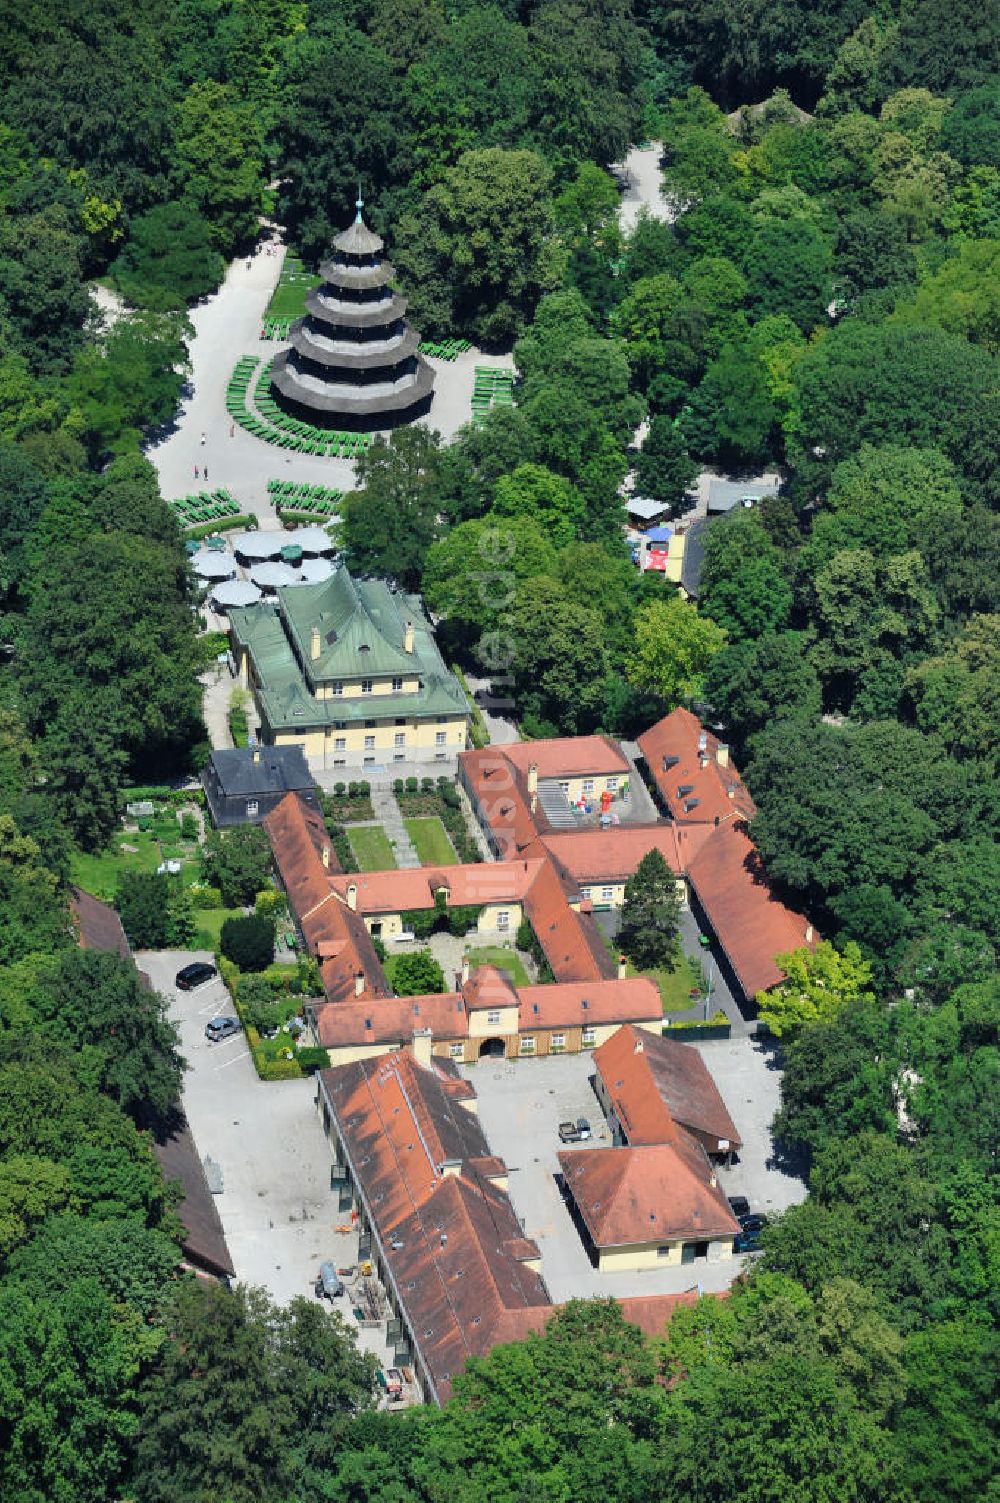 Luftbild München - Verwaltung des Erholungspark Englischer Garten in München